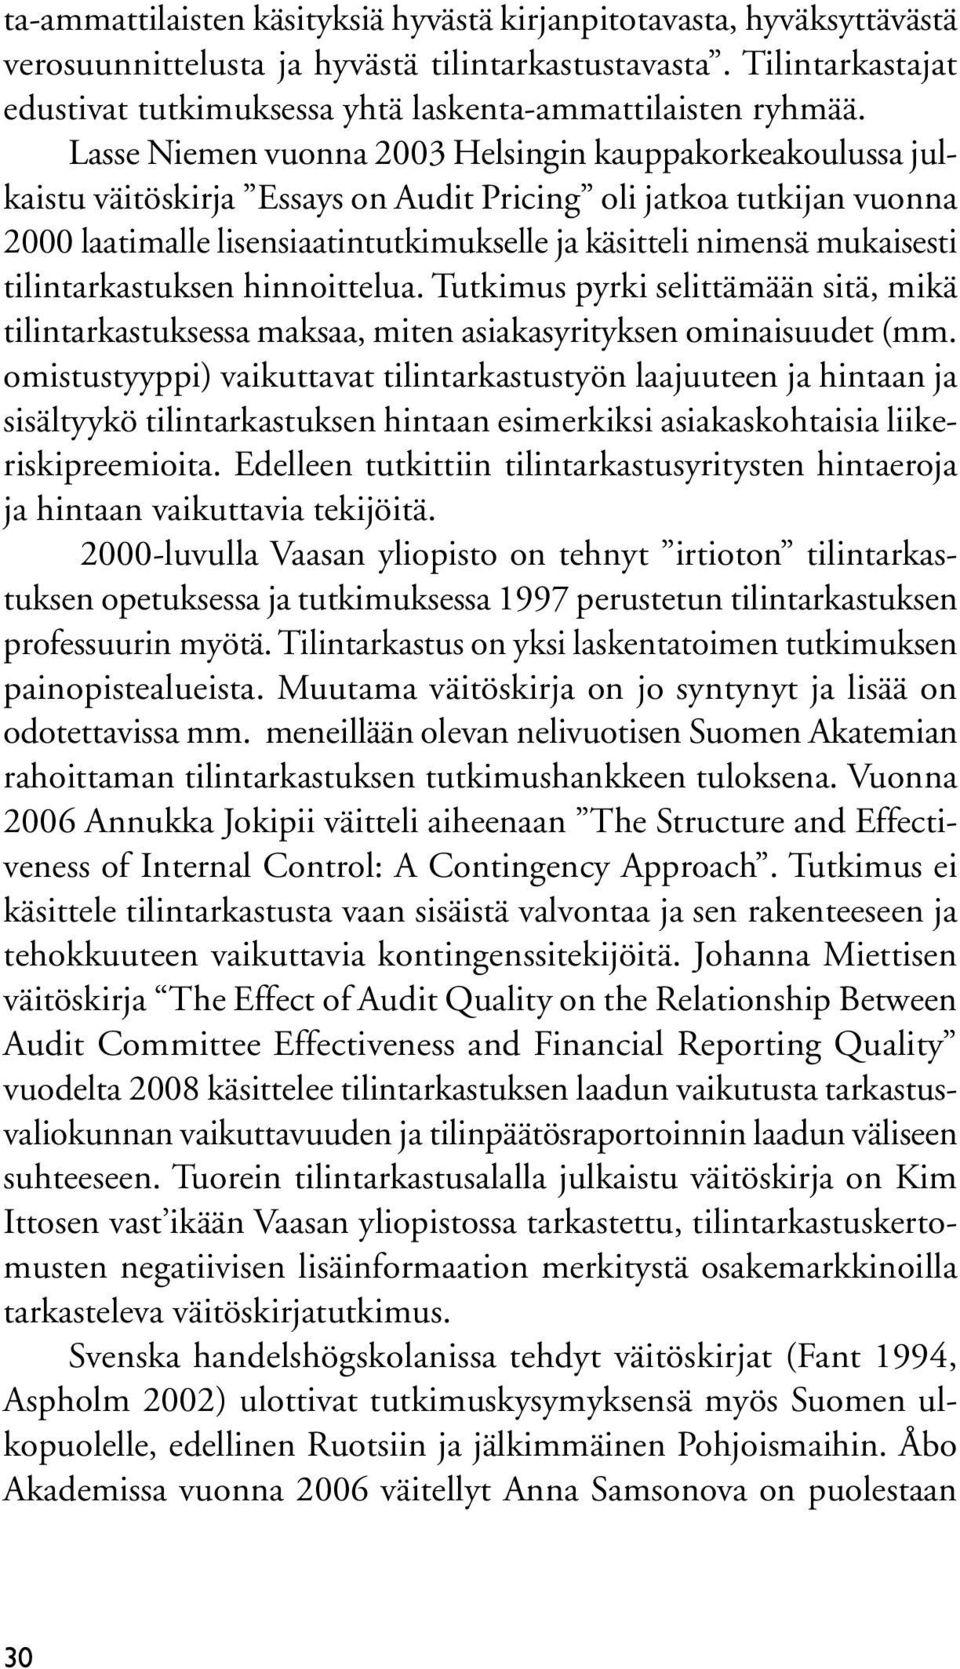 Lasse Niemen vuonna 2003 Helsingin kauppakorkeakoulussa julkaistu väitöskirja Essays on Audit Pricing oli jatkoa tutkijan vuonna 2000 laatimalle lisensiaatintutkimukselle ja käsitteli nimensä